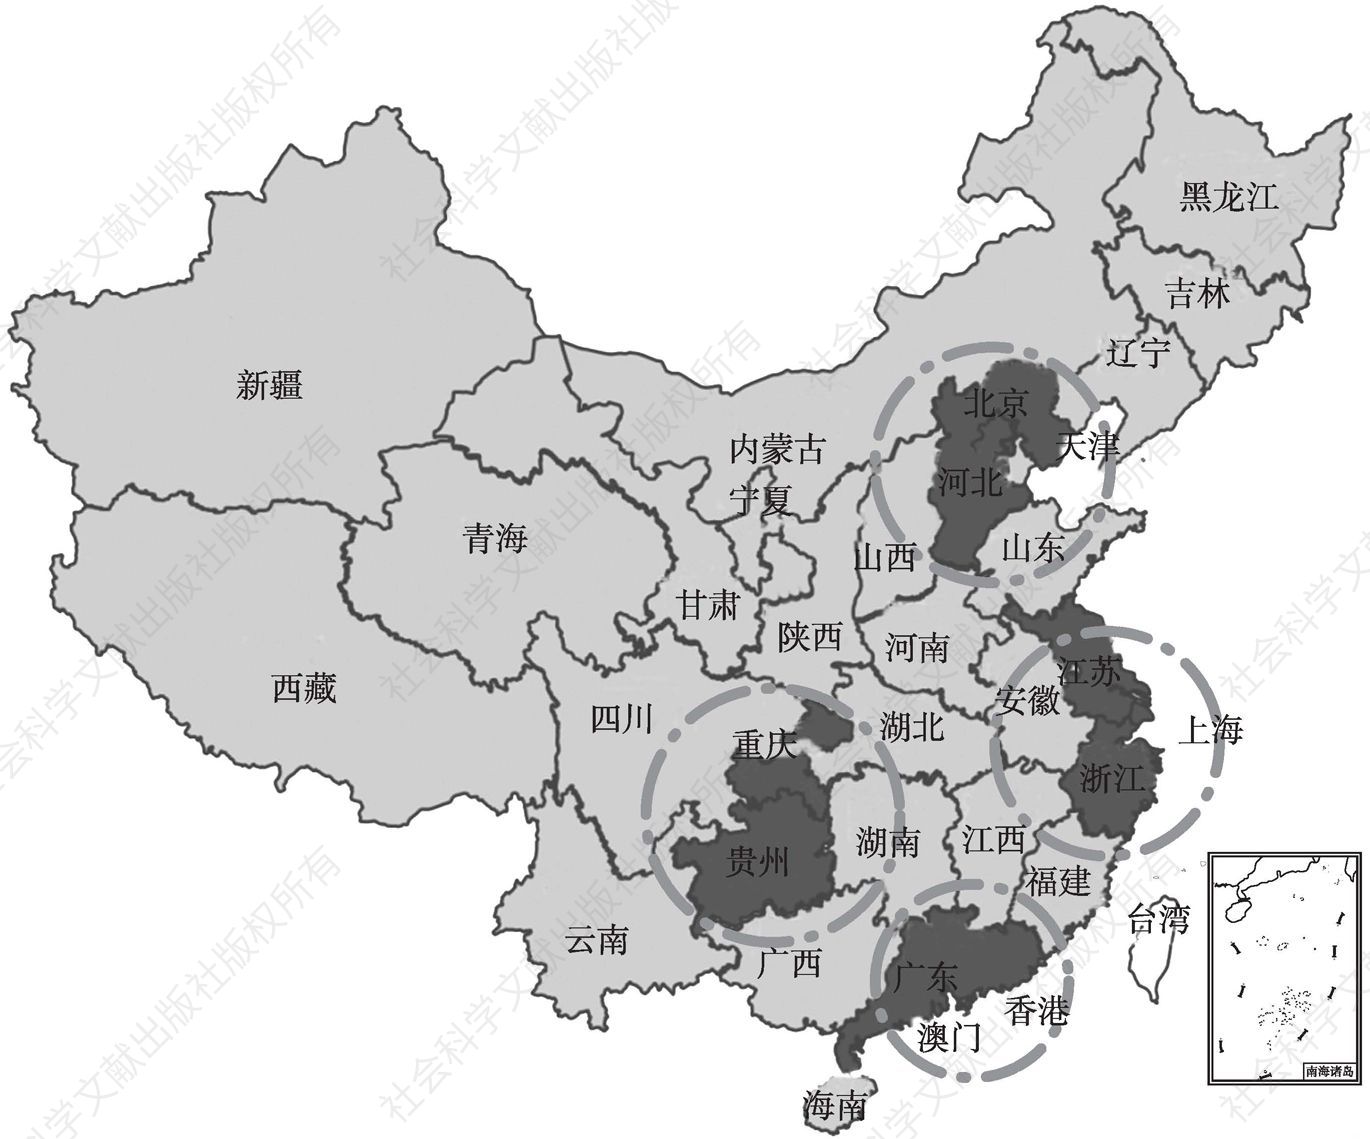 图1 中国大数据产业圈分布